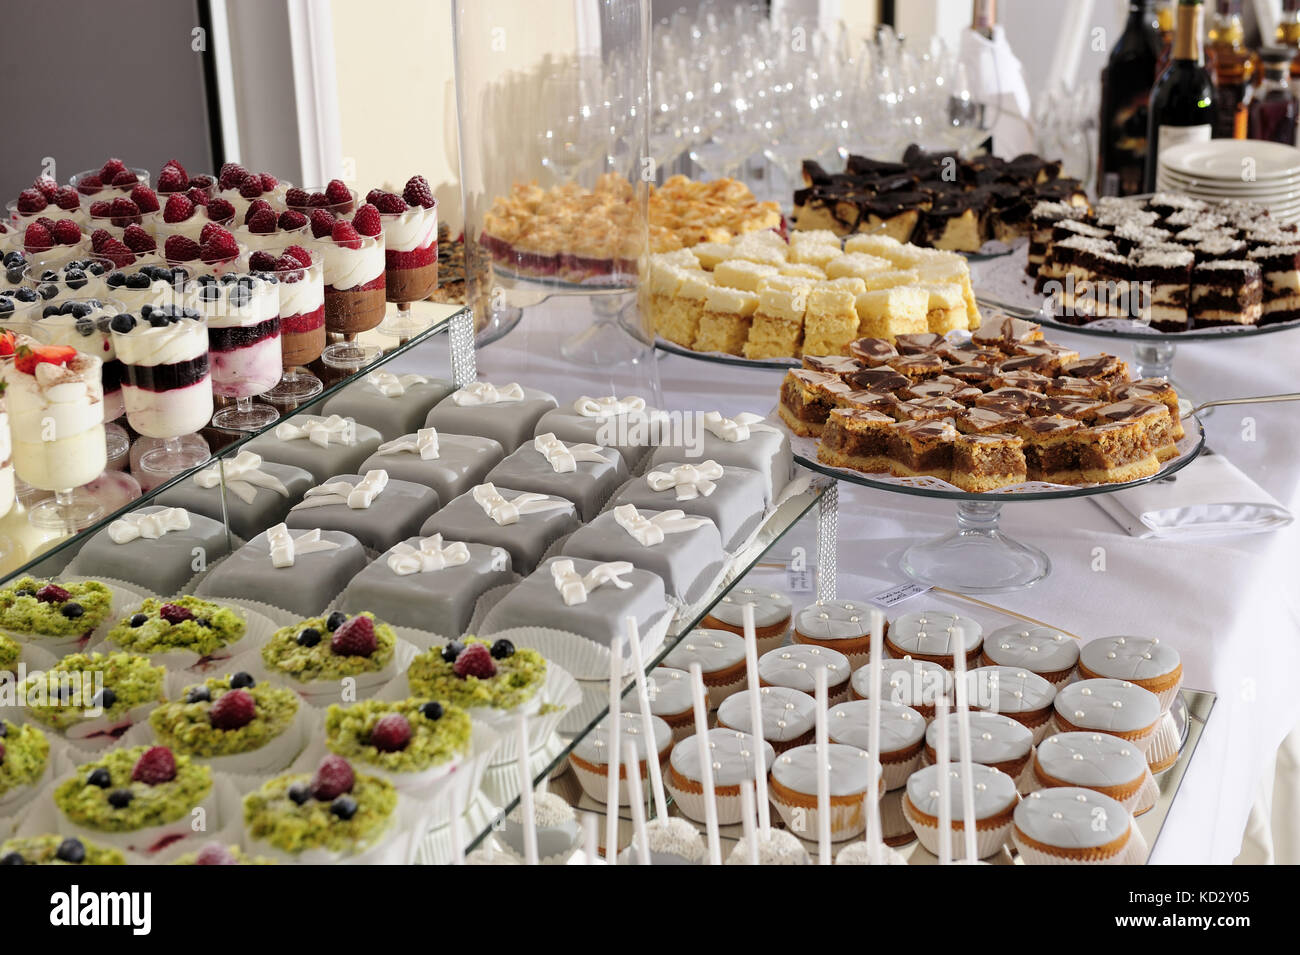 gâteaux, fêtes, sucreries, rafraîchissements, gâteaux, sucreries, en-cas, calories, sucreries Banque D'Images